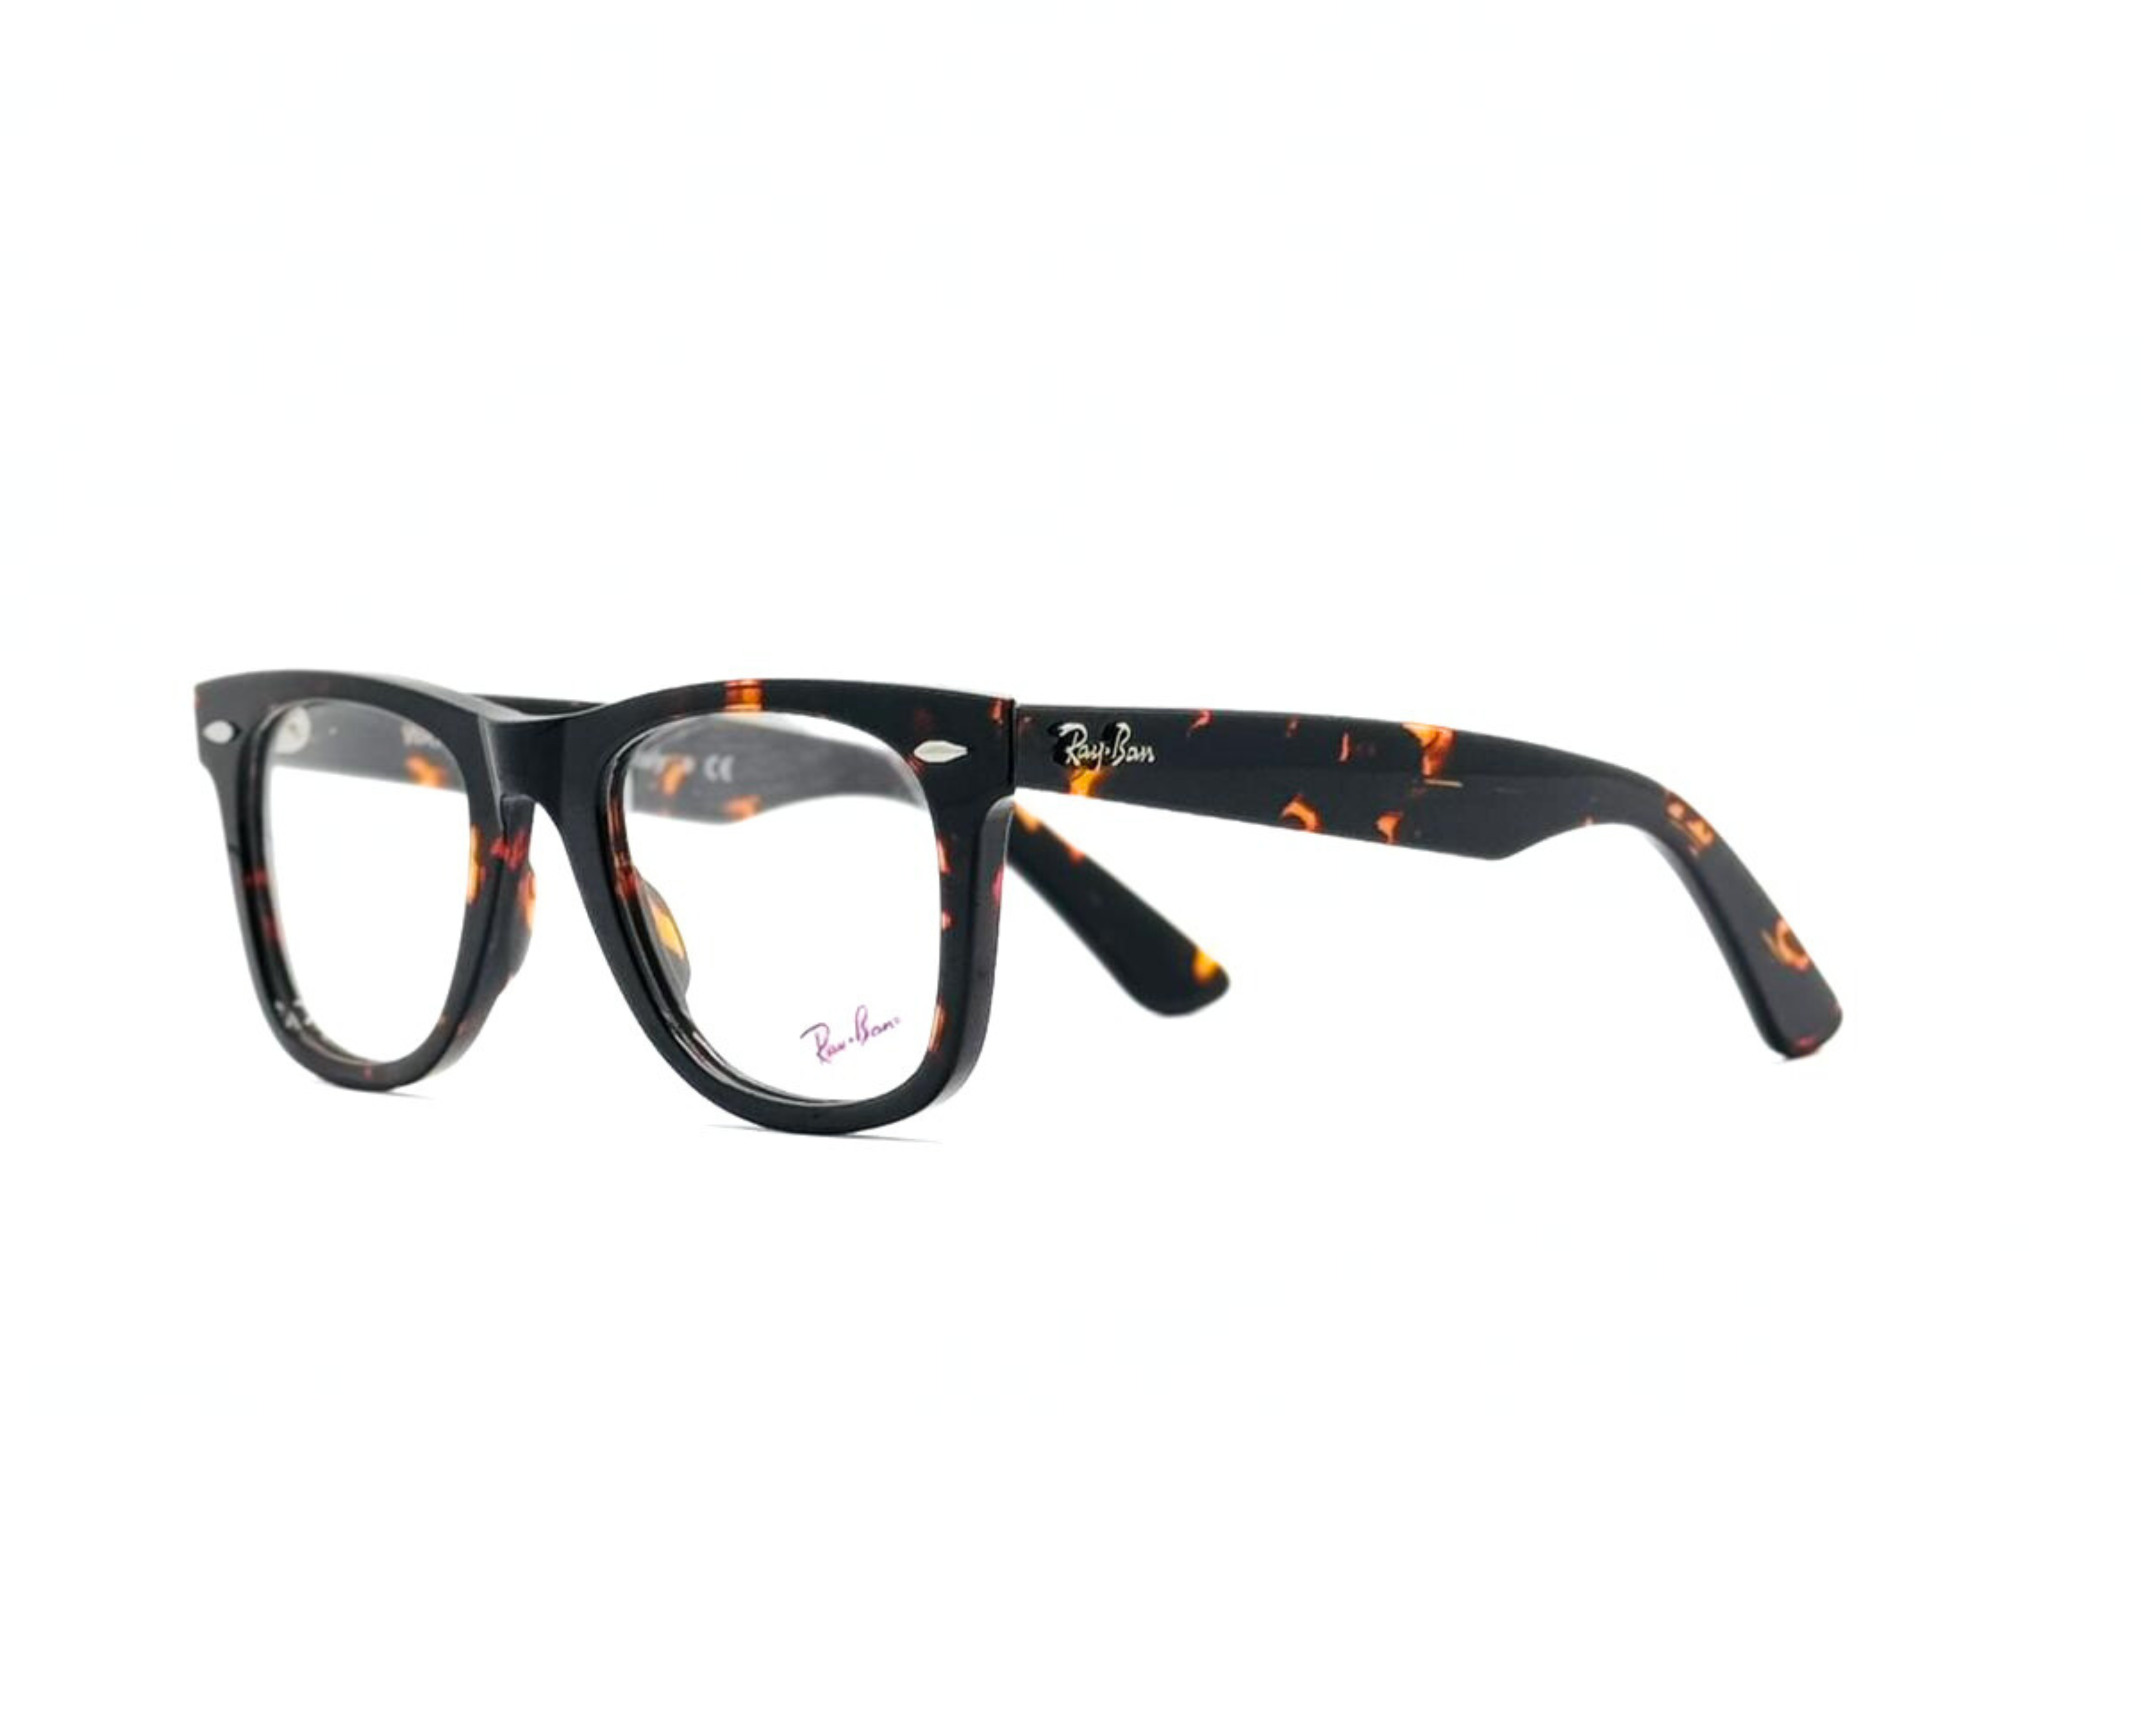 NS Luxury - J07 - Tortoise - Eyeglasses